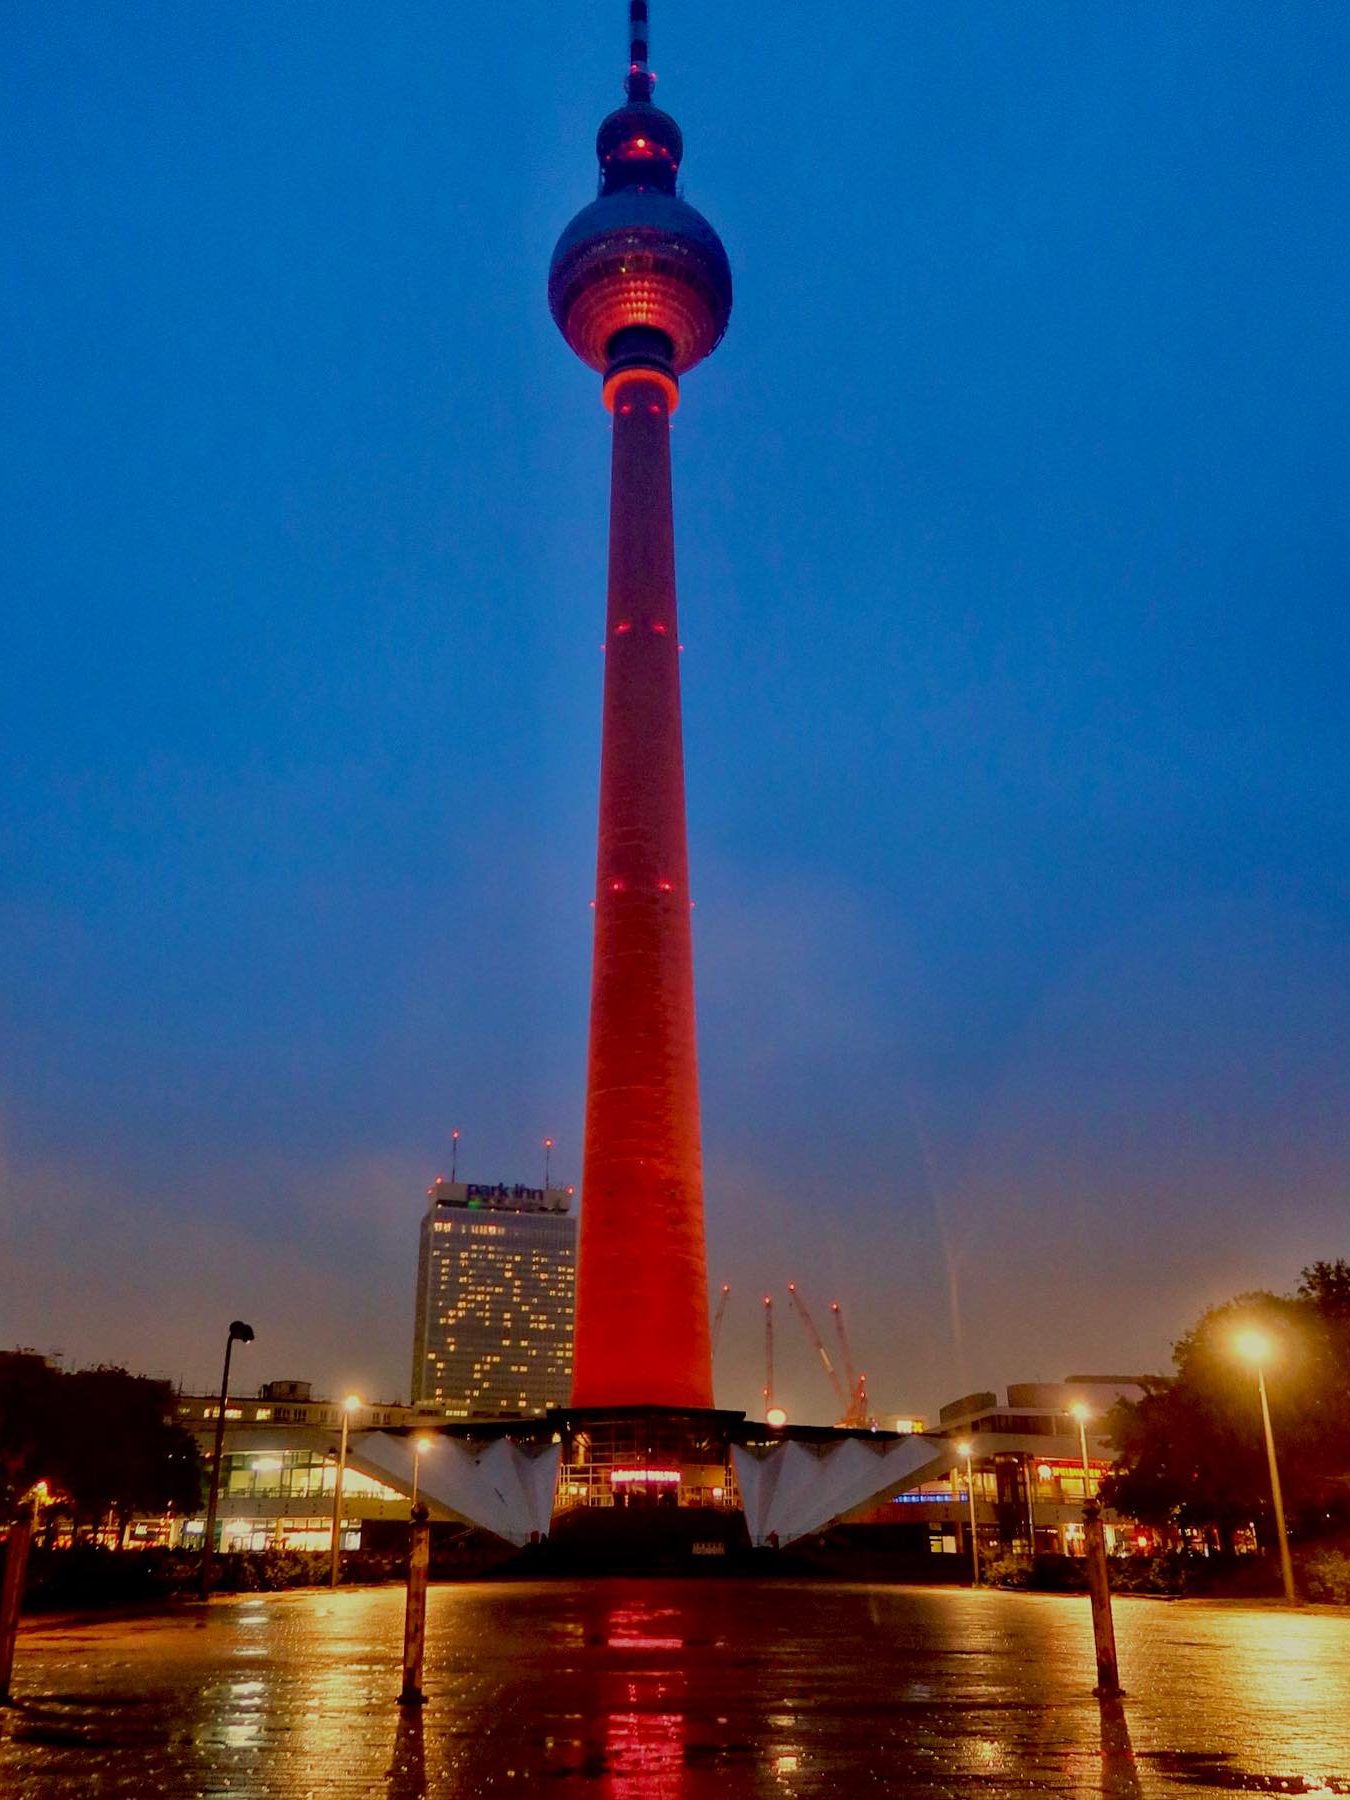 TV-toren in Berlijn bezoeken (de Berliner Fernsehturm) licht festival